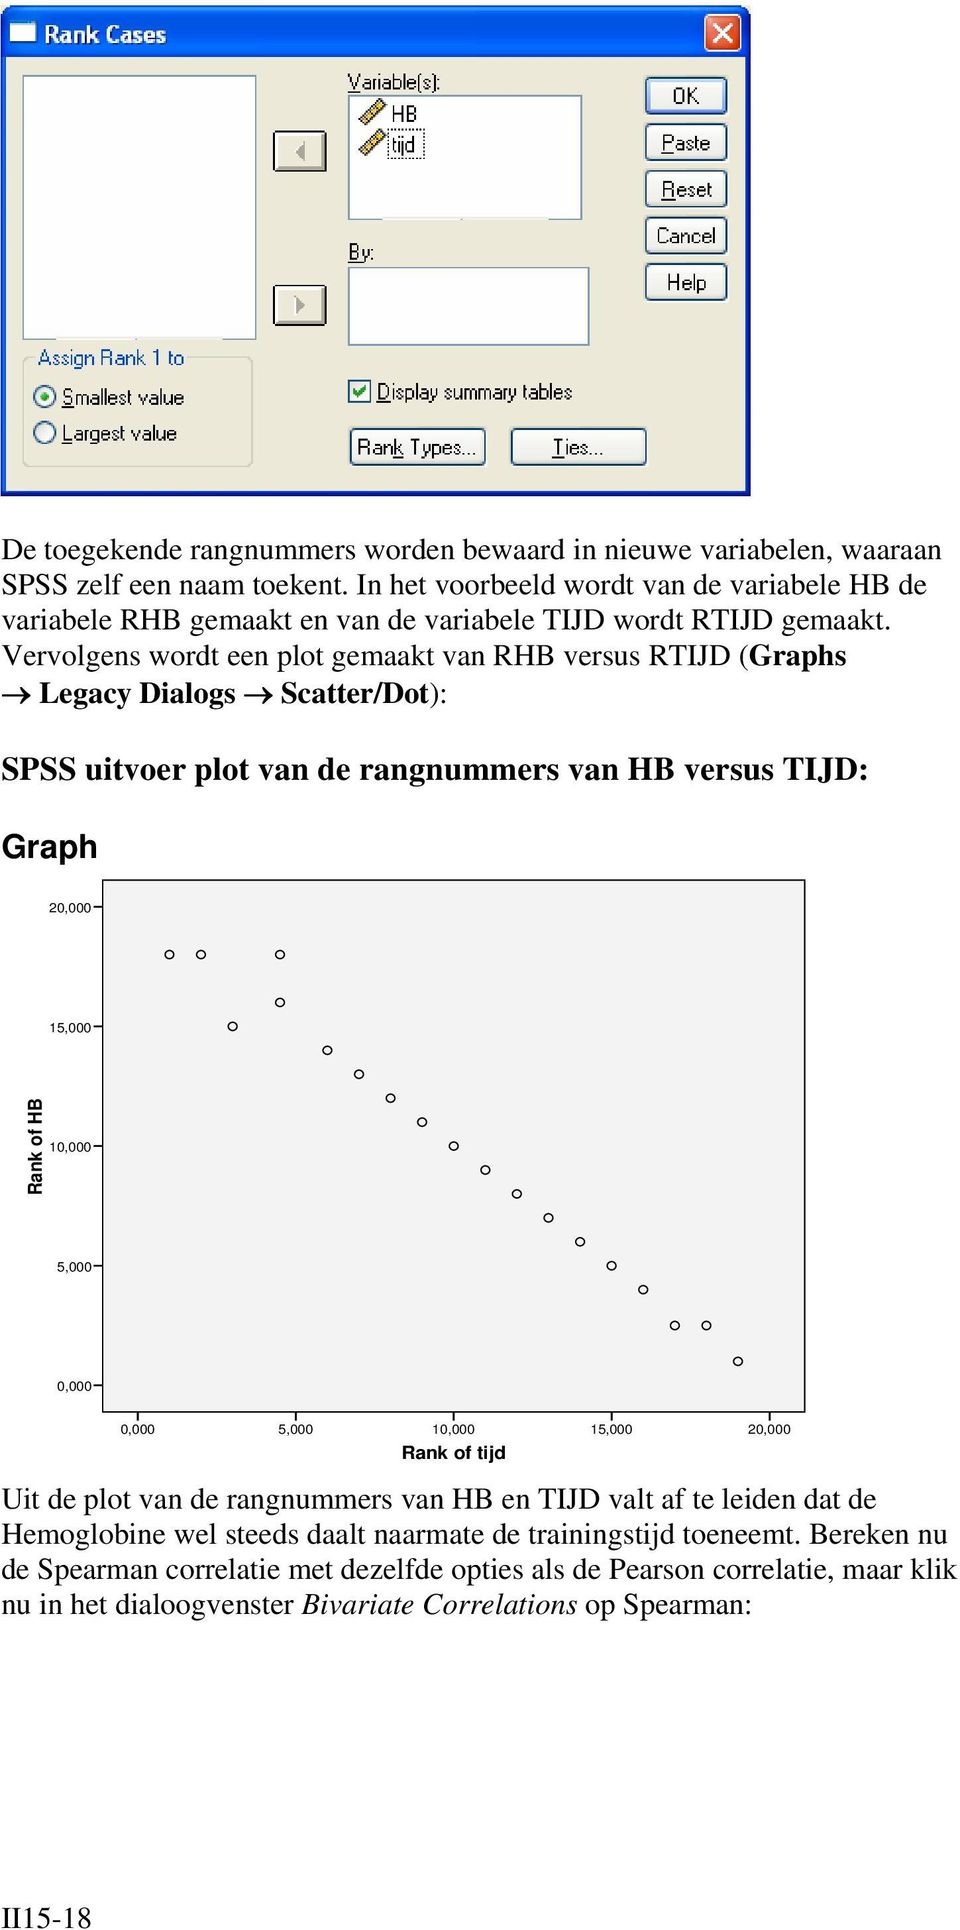 Vervolgens wordt een plot gemaakt van RHB versus RTIJD (Graphs Legacy Dialogs Scatter/Dot): SPSS uitvoer plot van de rangnummers van HB versus TIJD: Graph 0,000 5,000 Rank of HB 0,000